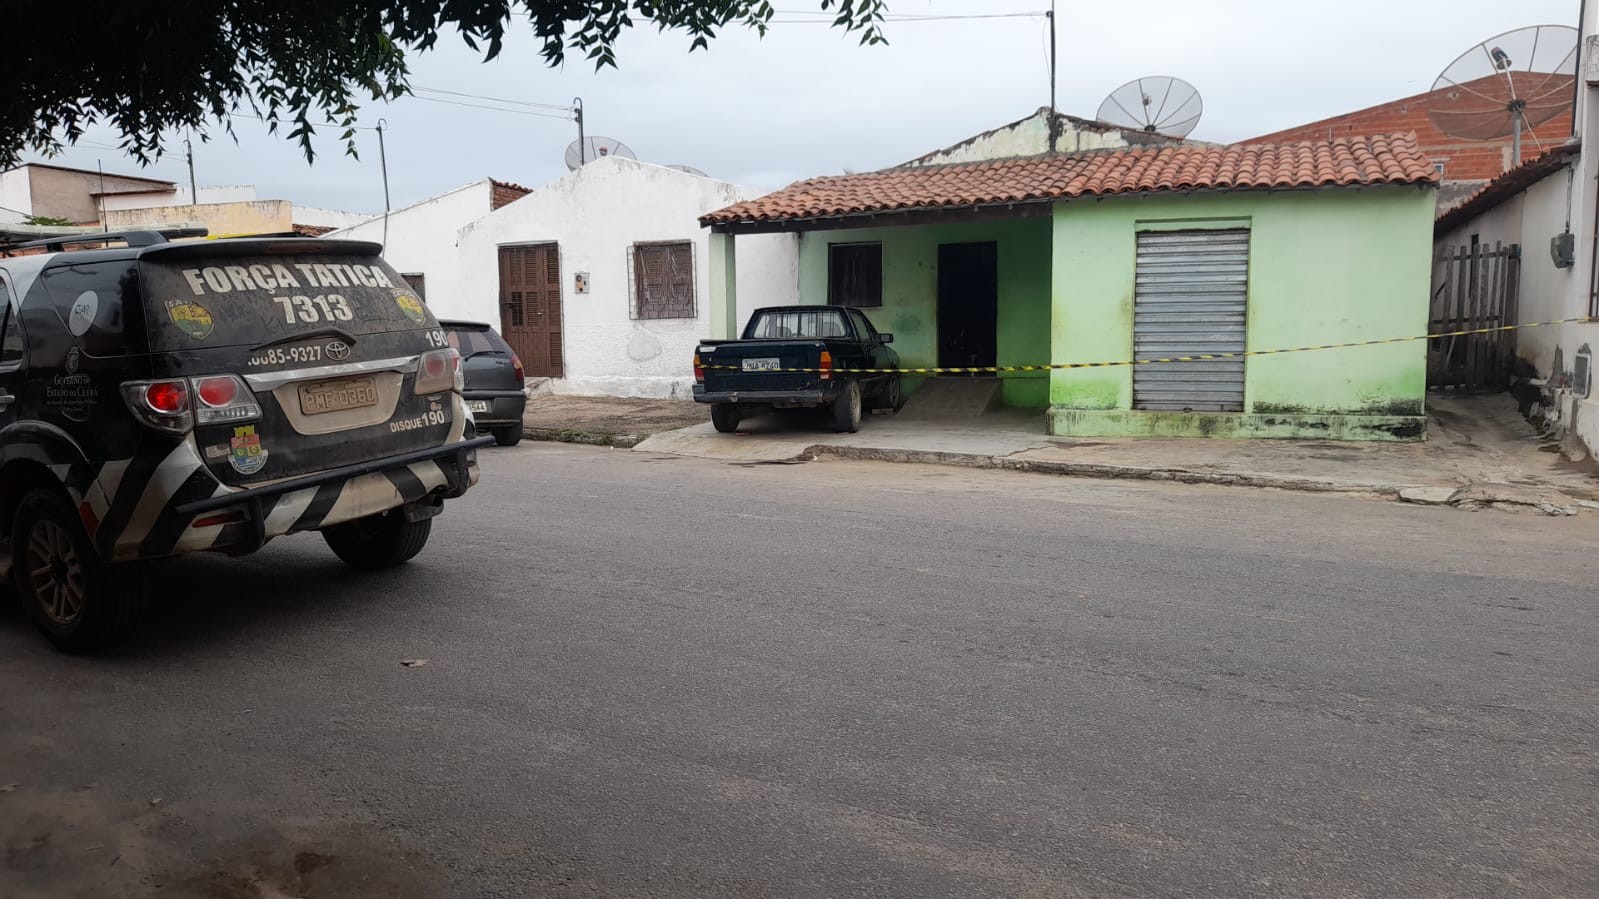 Quatro acusados viram réus por envolvimento na chacina em Monsenhor Tabosa, no Ceará